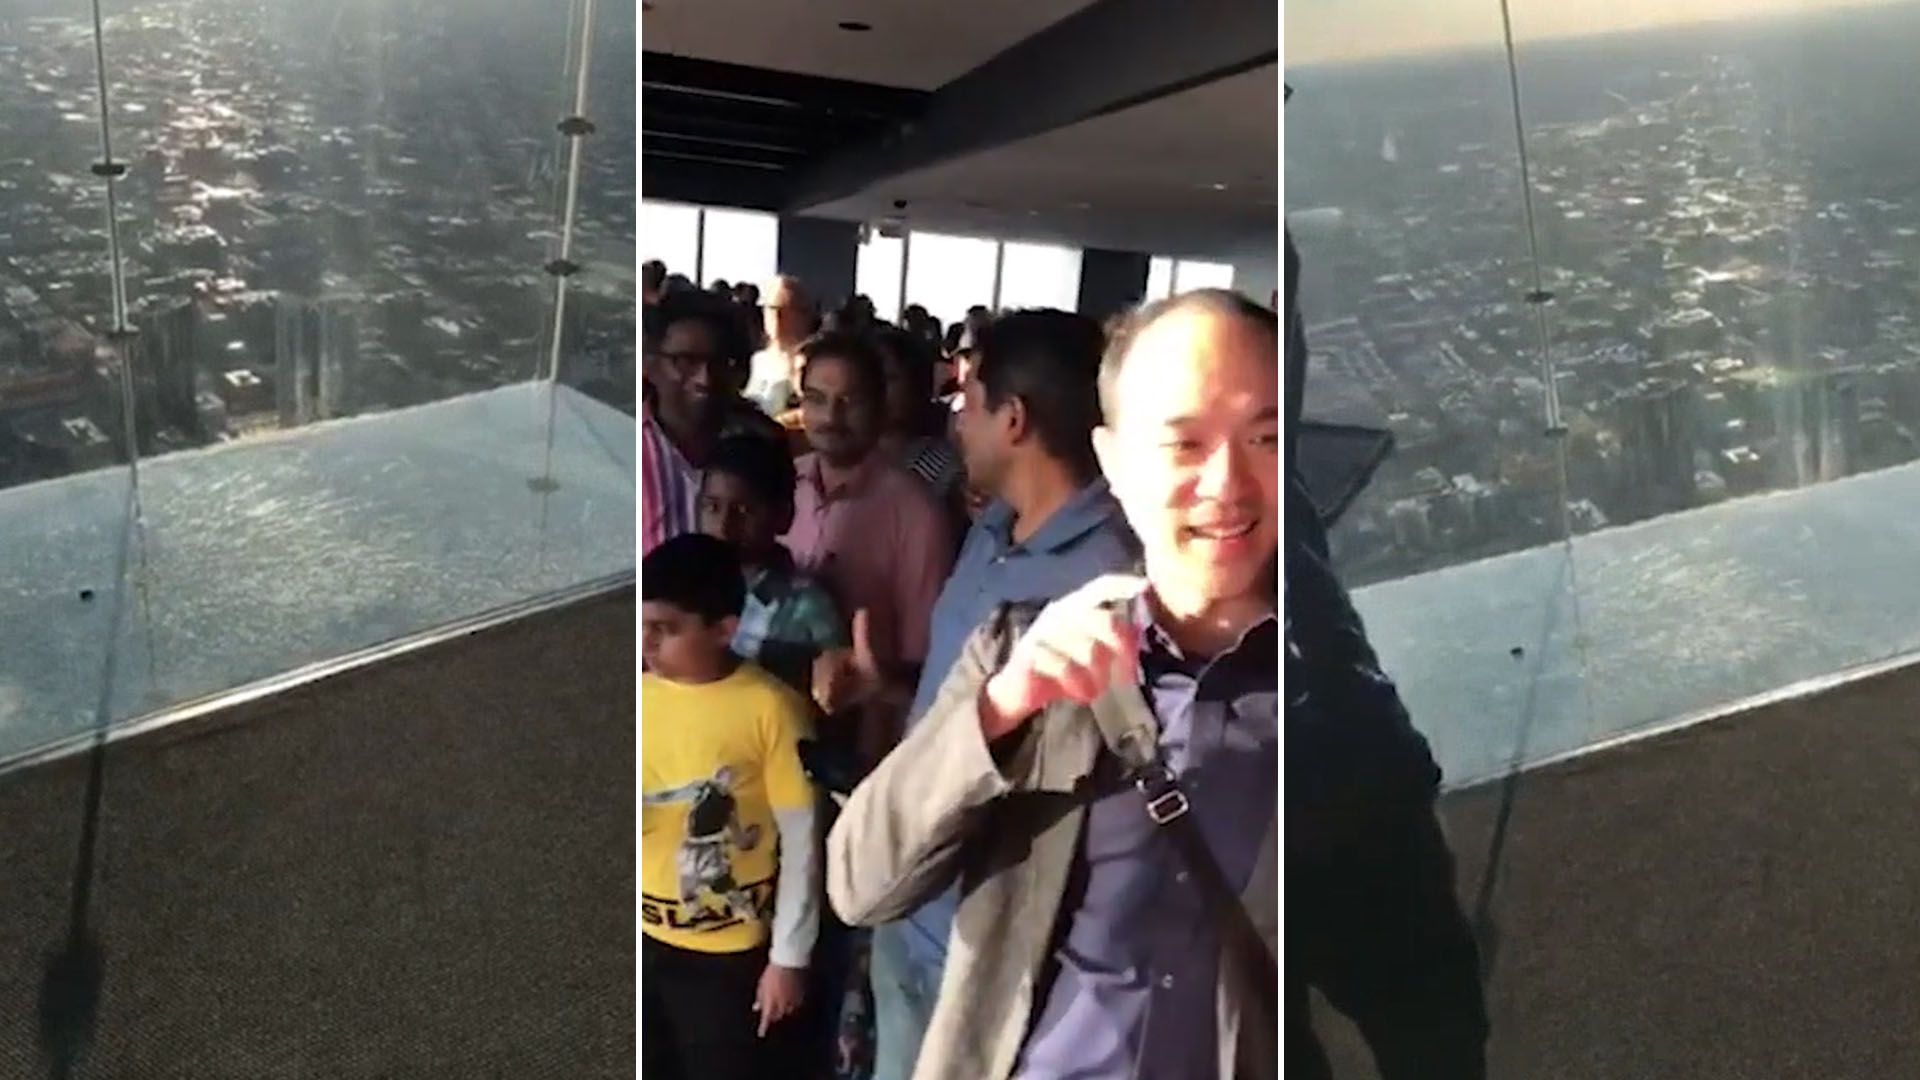 El SkyDeck de la torre se “astilló en miles de pedazos”, asustando a los turistas que visitaban en ese momento el mirador (Foto: captura de pantalla video Facebook @JesúsPc)